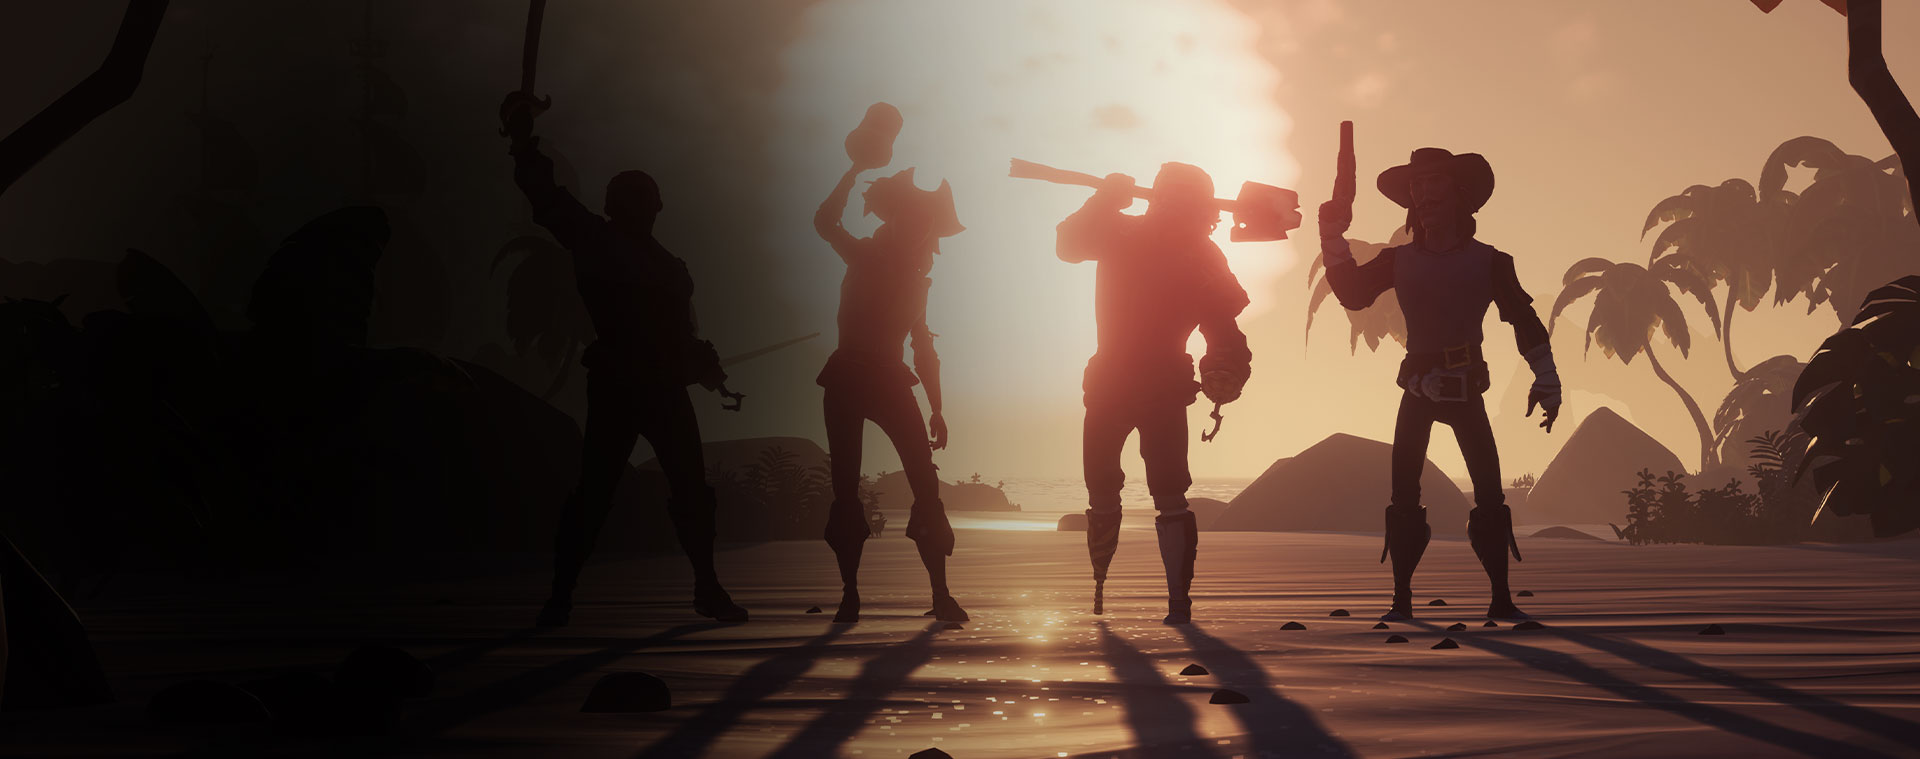 Τέσσερις χαρακτήρες από το Sea of Thieves μπροστά σε ένα ηλιοβασίλεμα